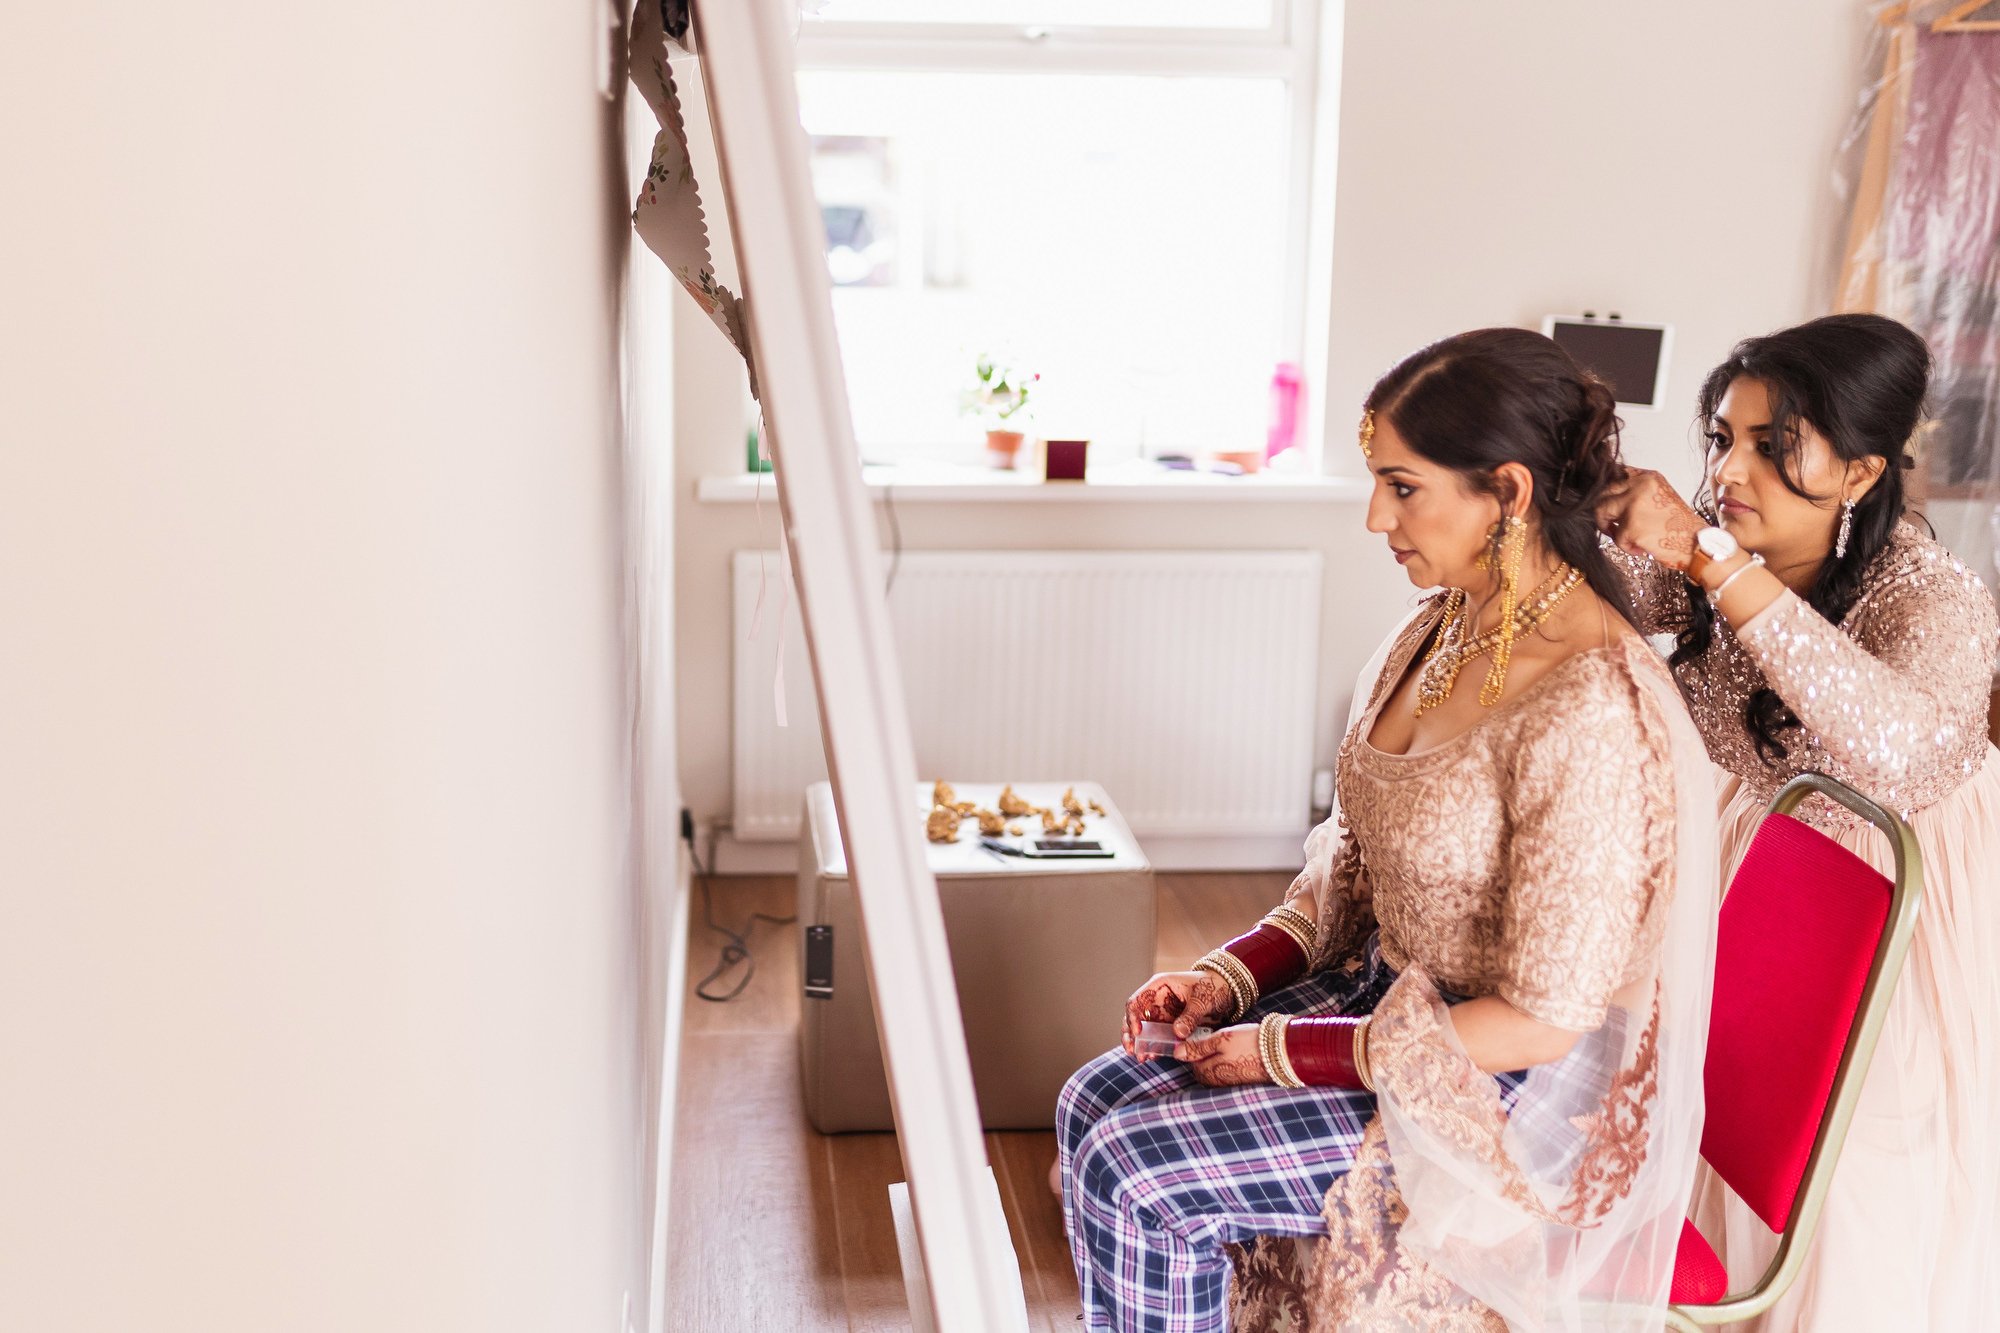 Sikh wedding photographer, Cardiff, Wales